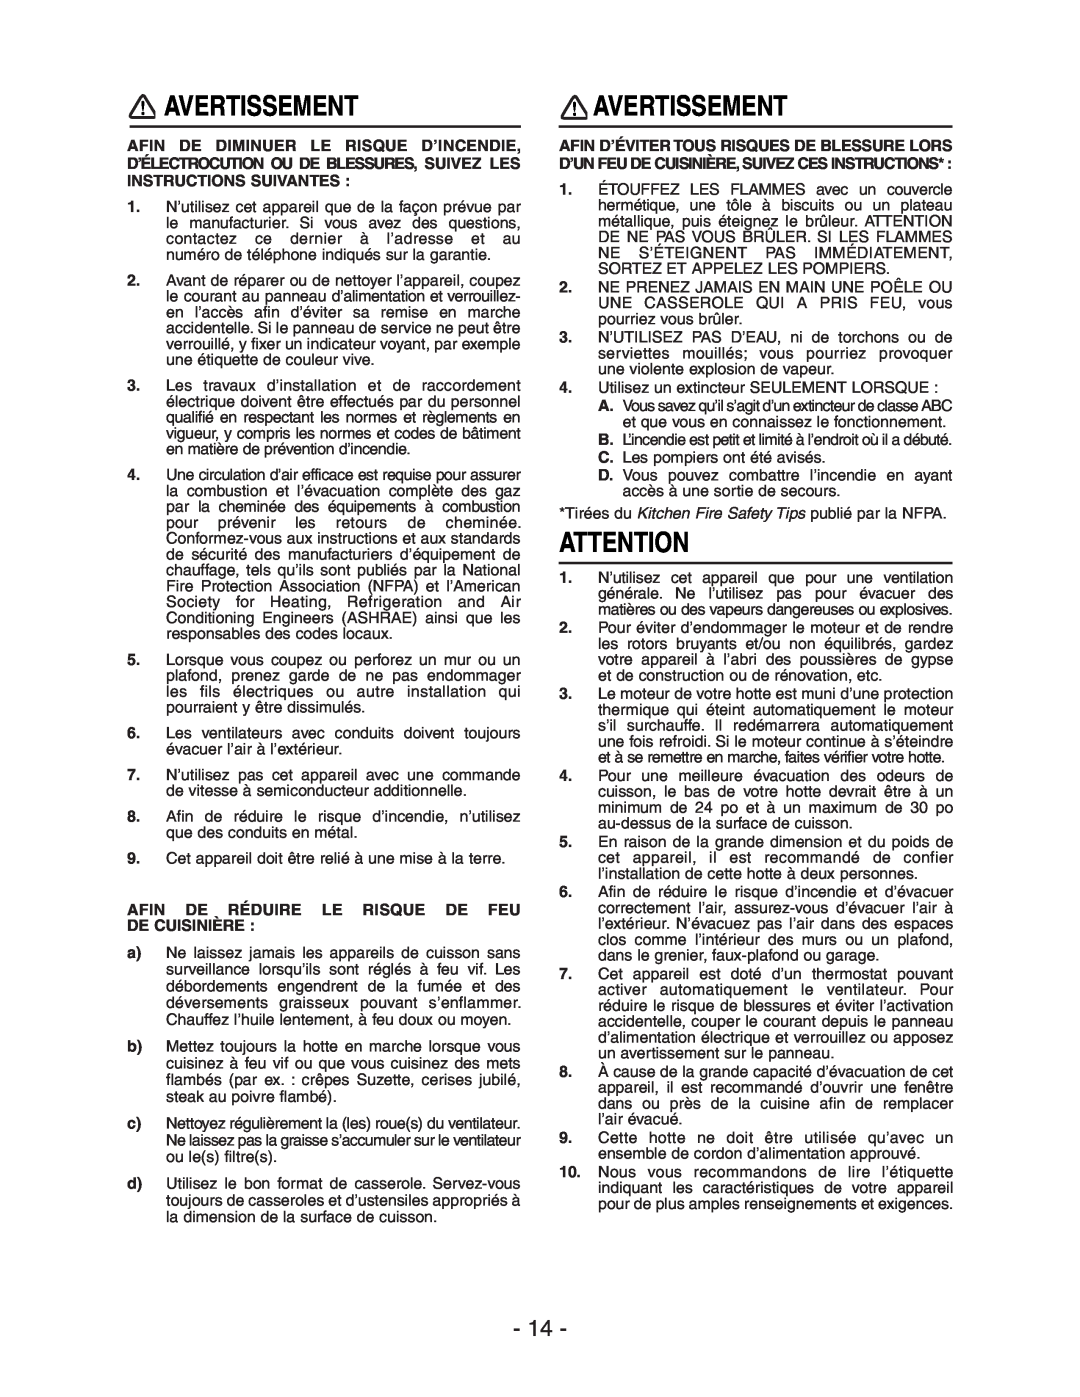 Broan E661 manual Avertissement, Afin De Réduire Le Risque De Feu De Cuisinière 